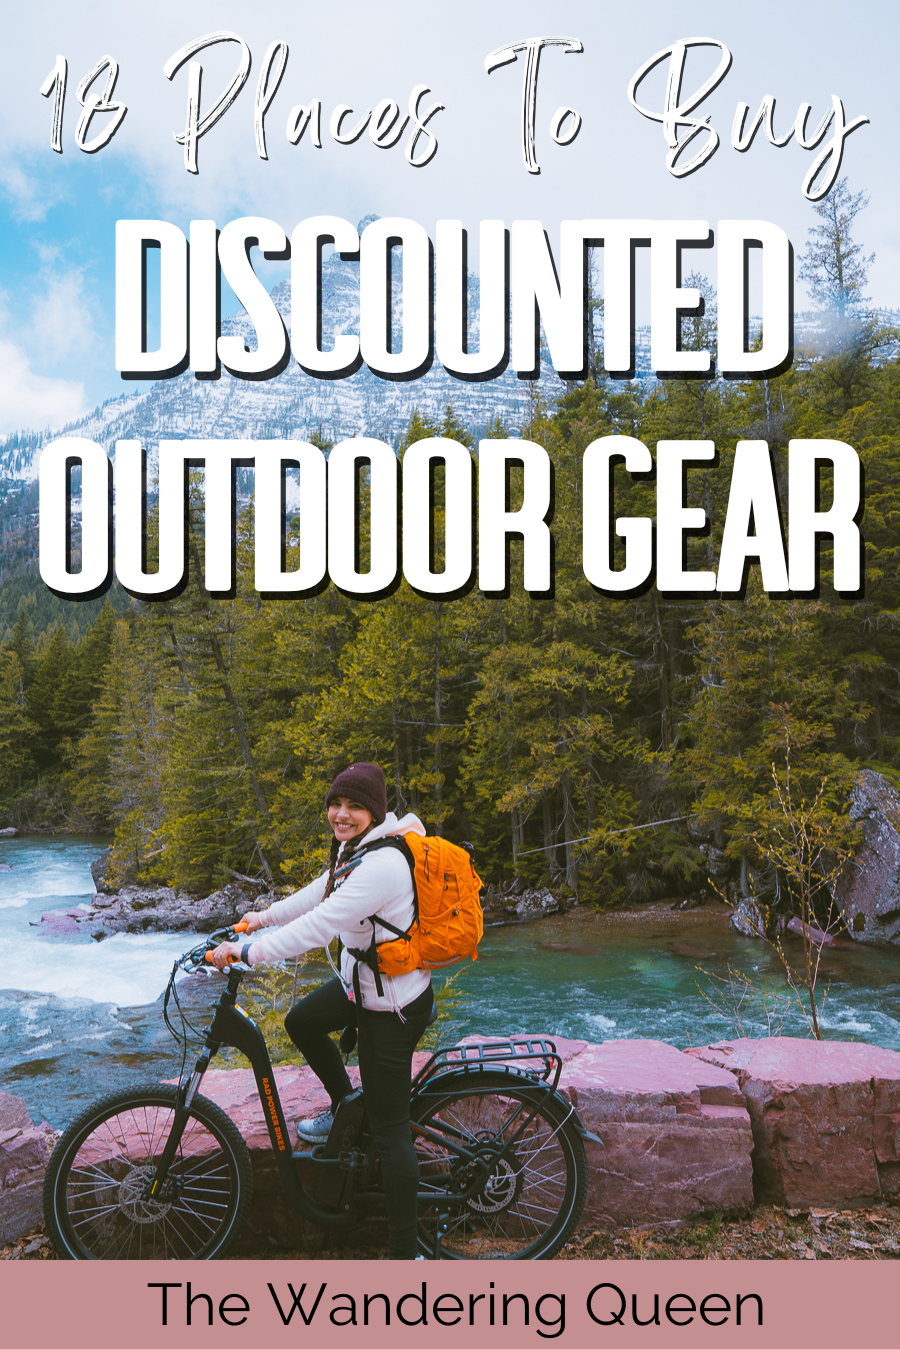 outdoor gear freebies